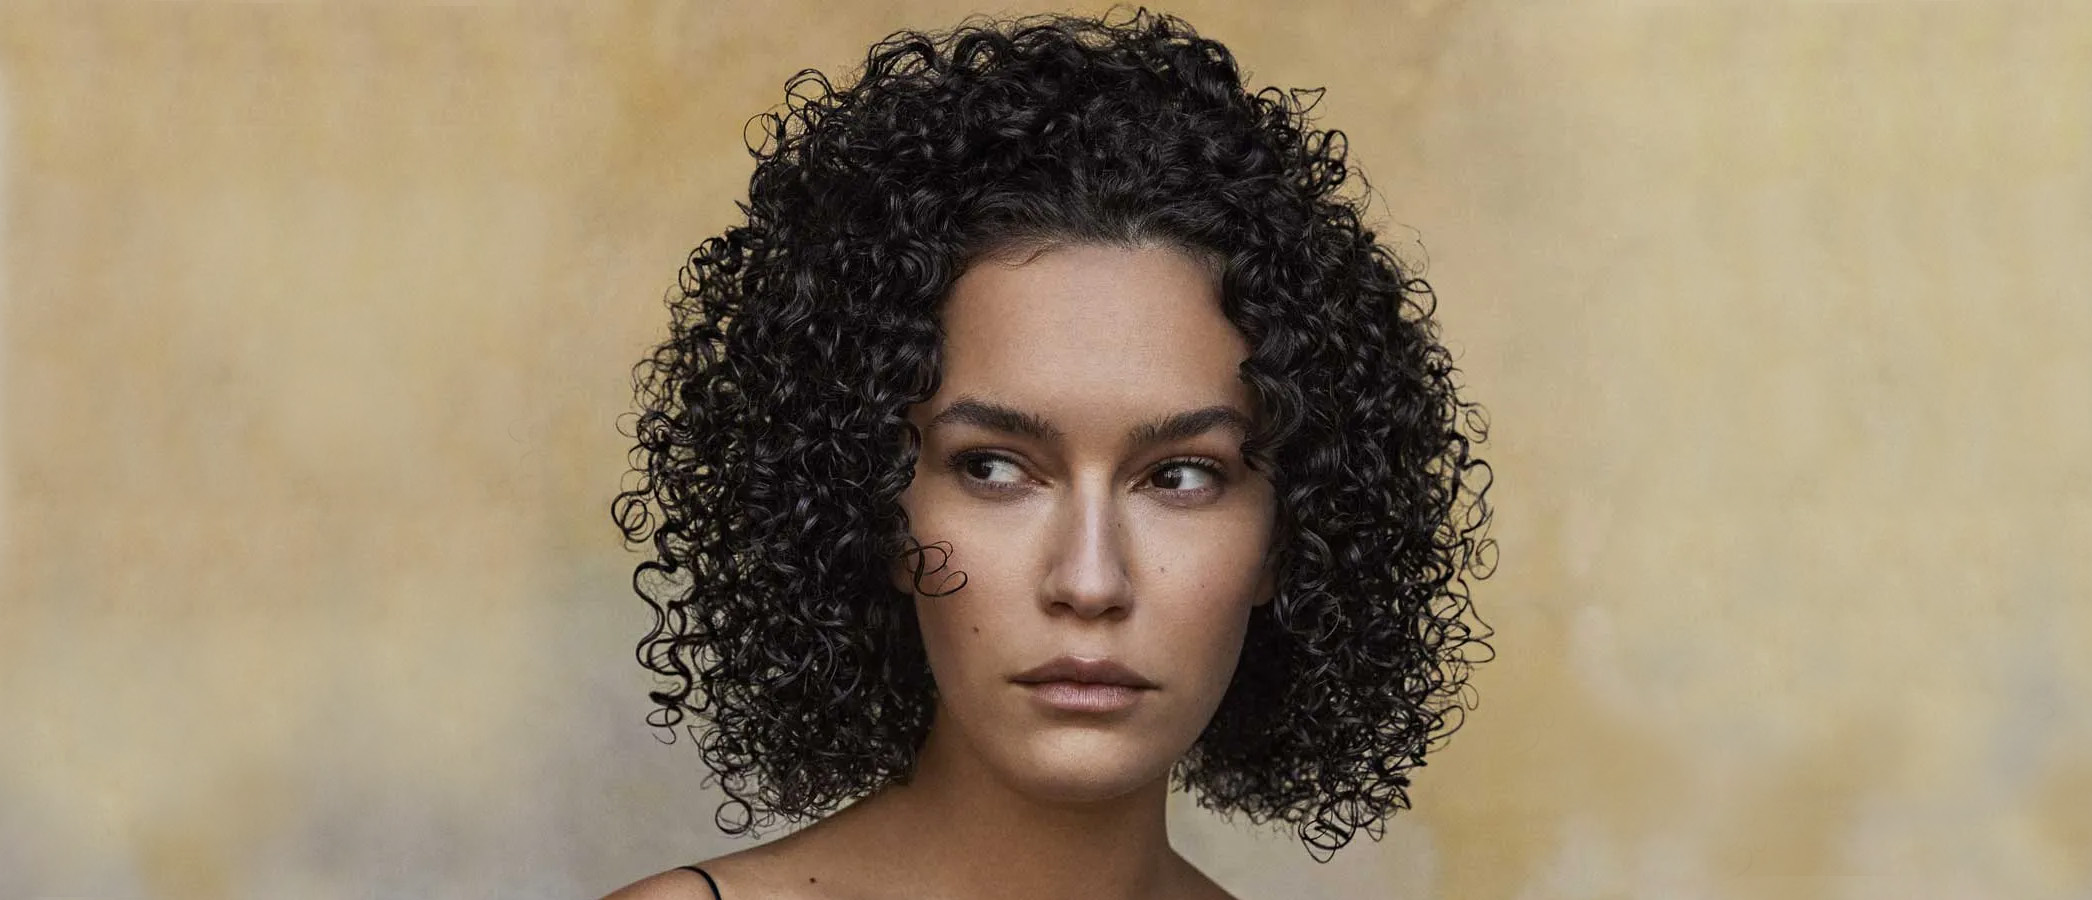 belleza: El difusor para el pelo rizado favorito del método curly es este